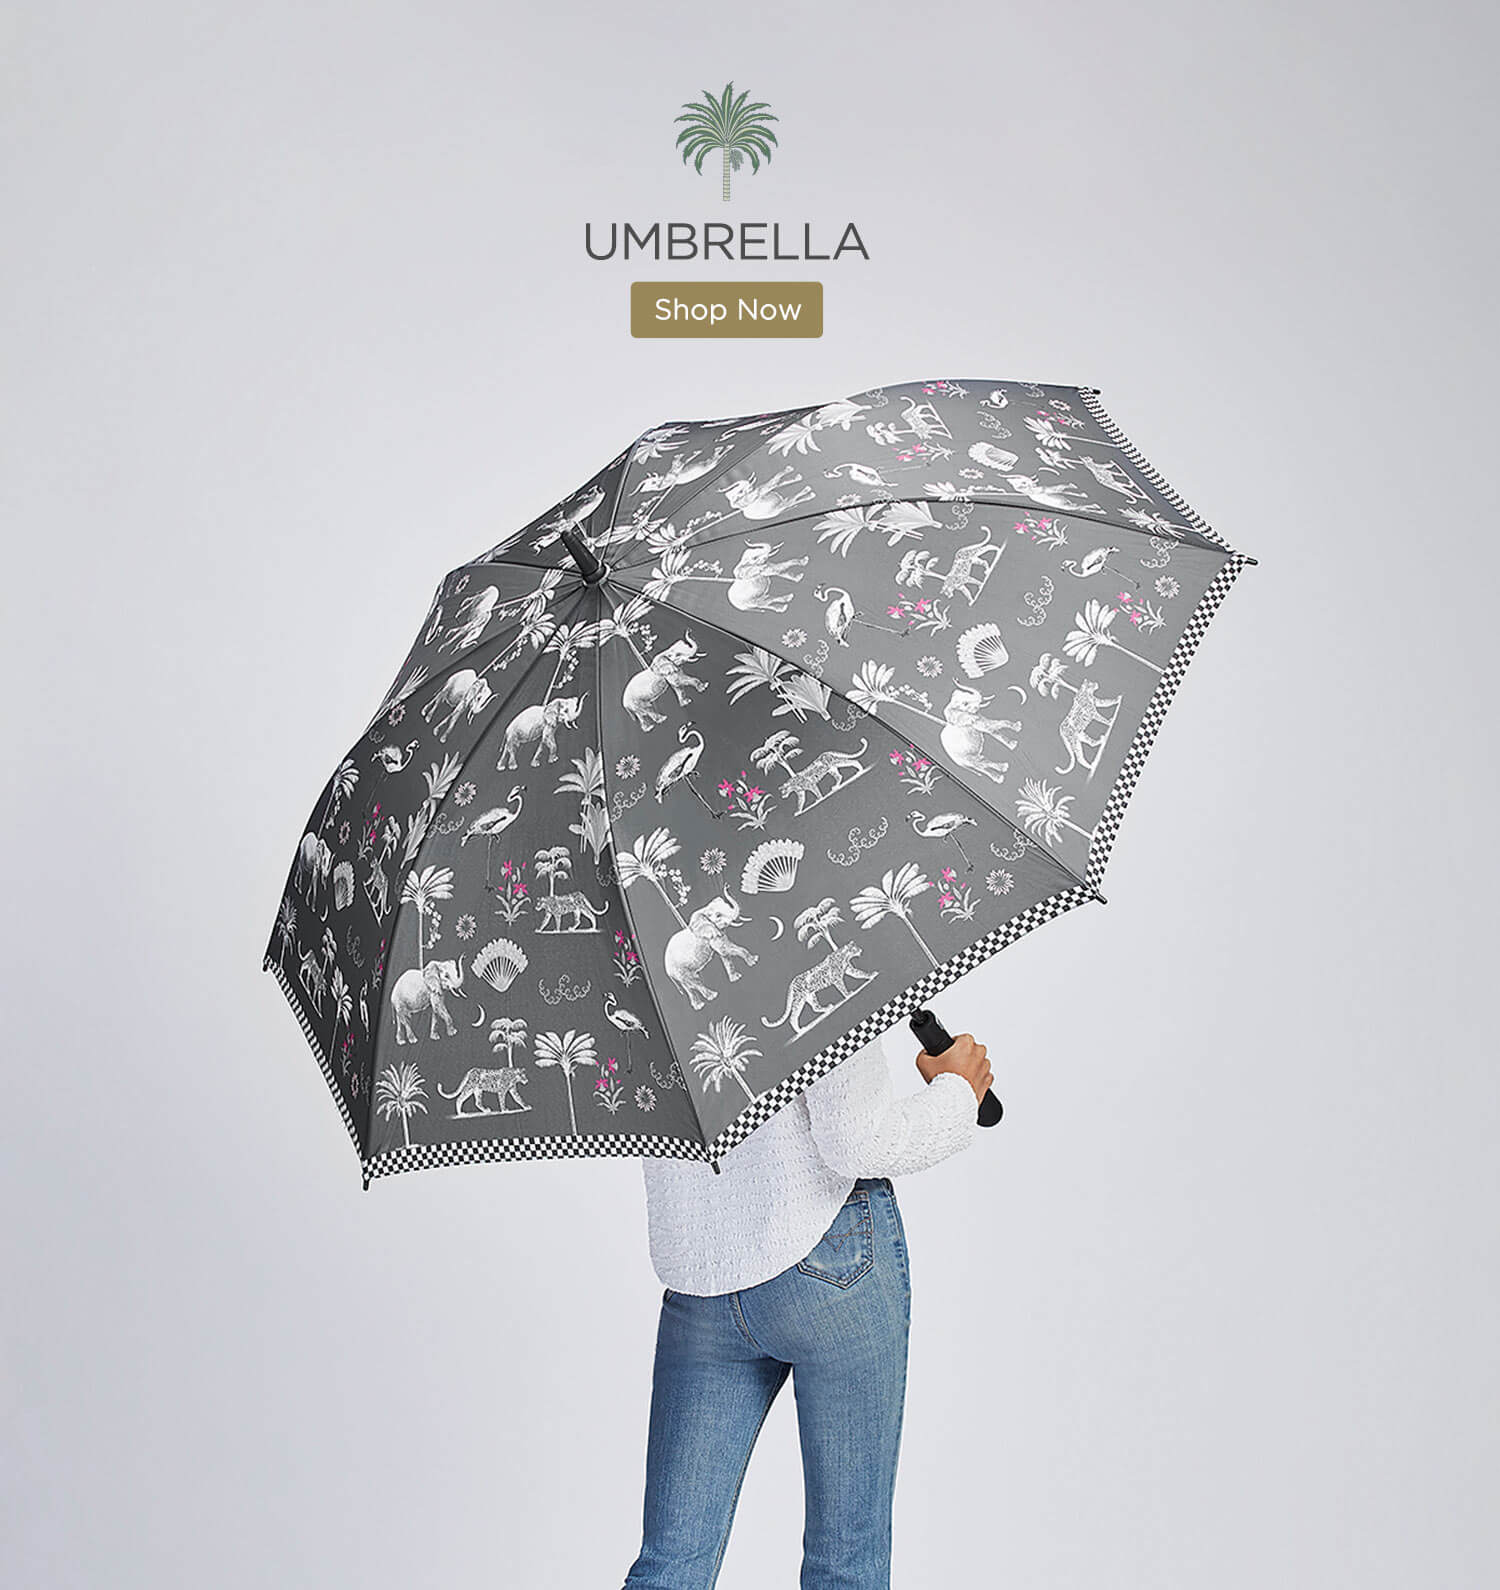 Buy Umbrella Online